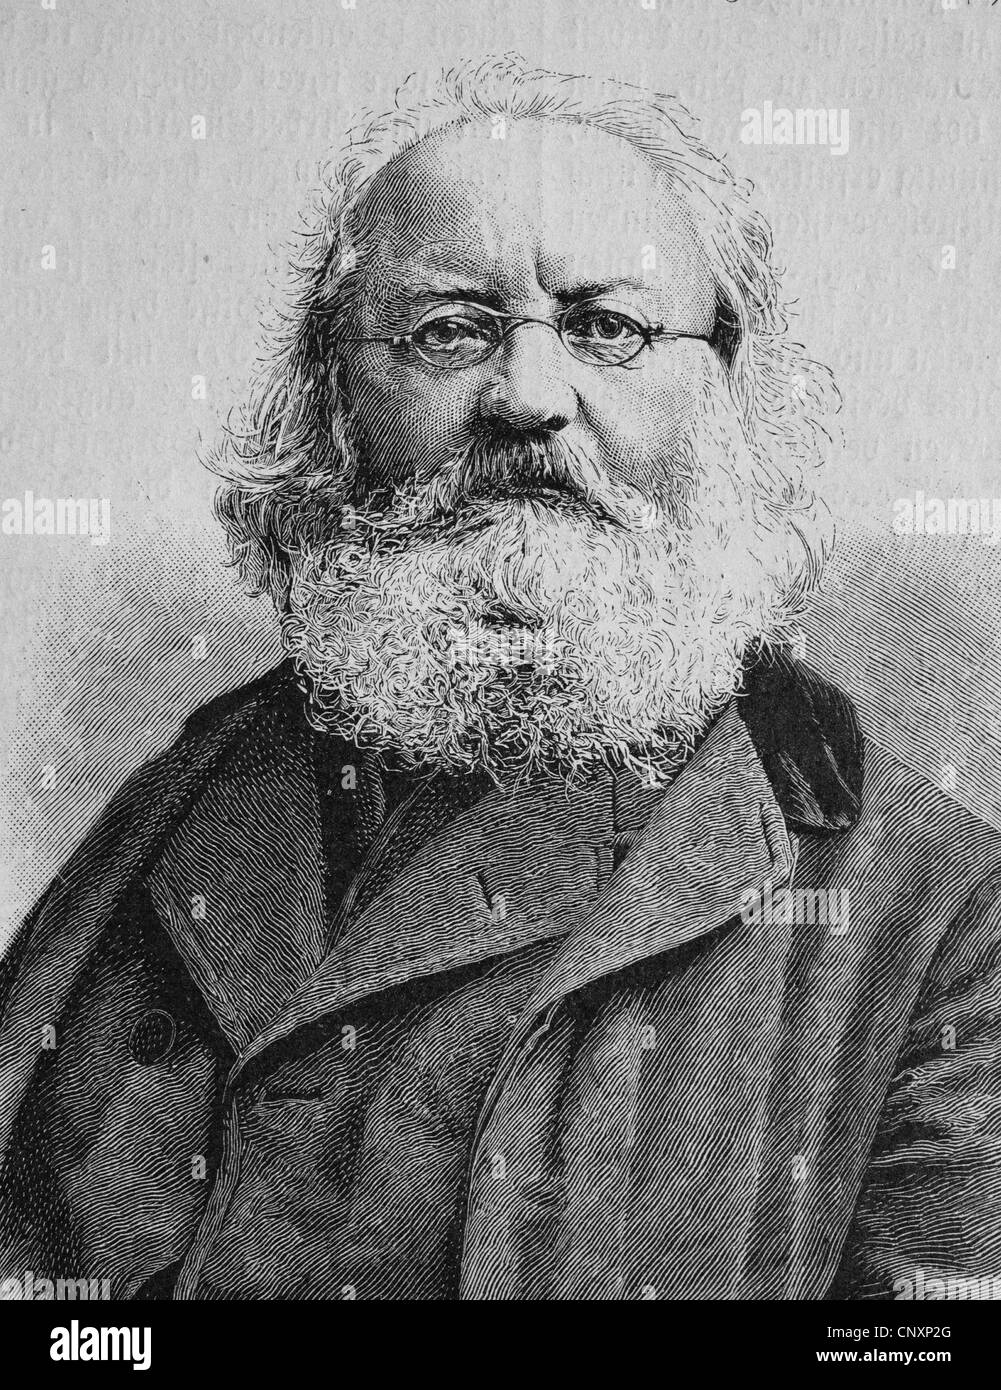 Friedrich Hofmann, 1813 - 1888, un écrivain allemand, gravure historique, vers 1885 Banque D'Images